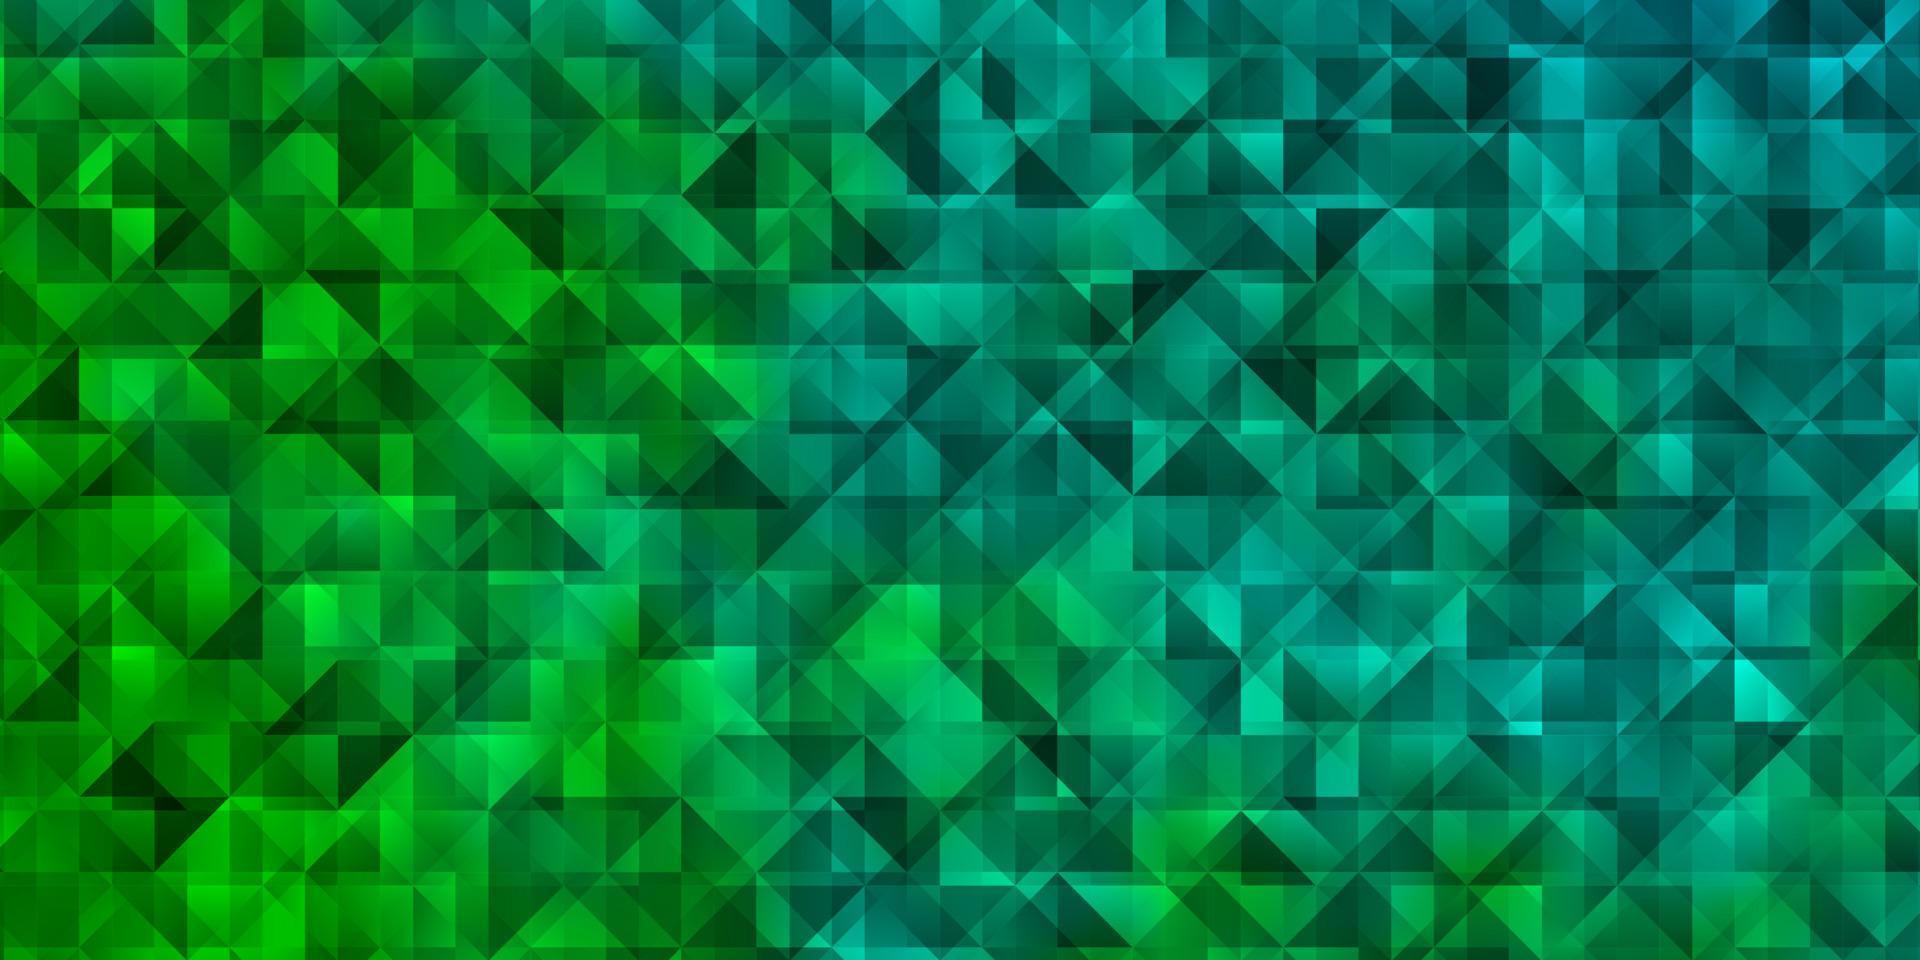 ljusblå, grön vektorlayout med linjer, trianglar. vektor